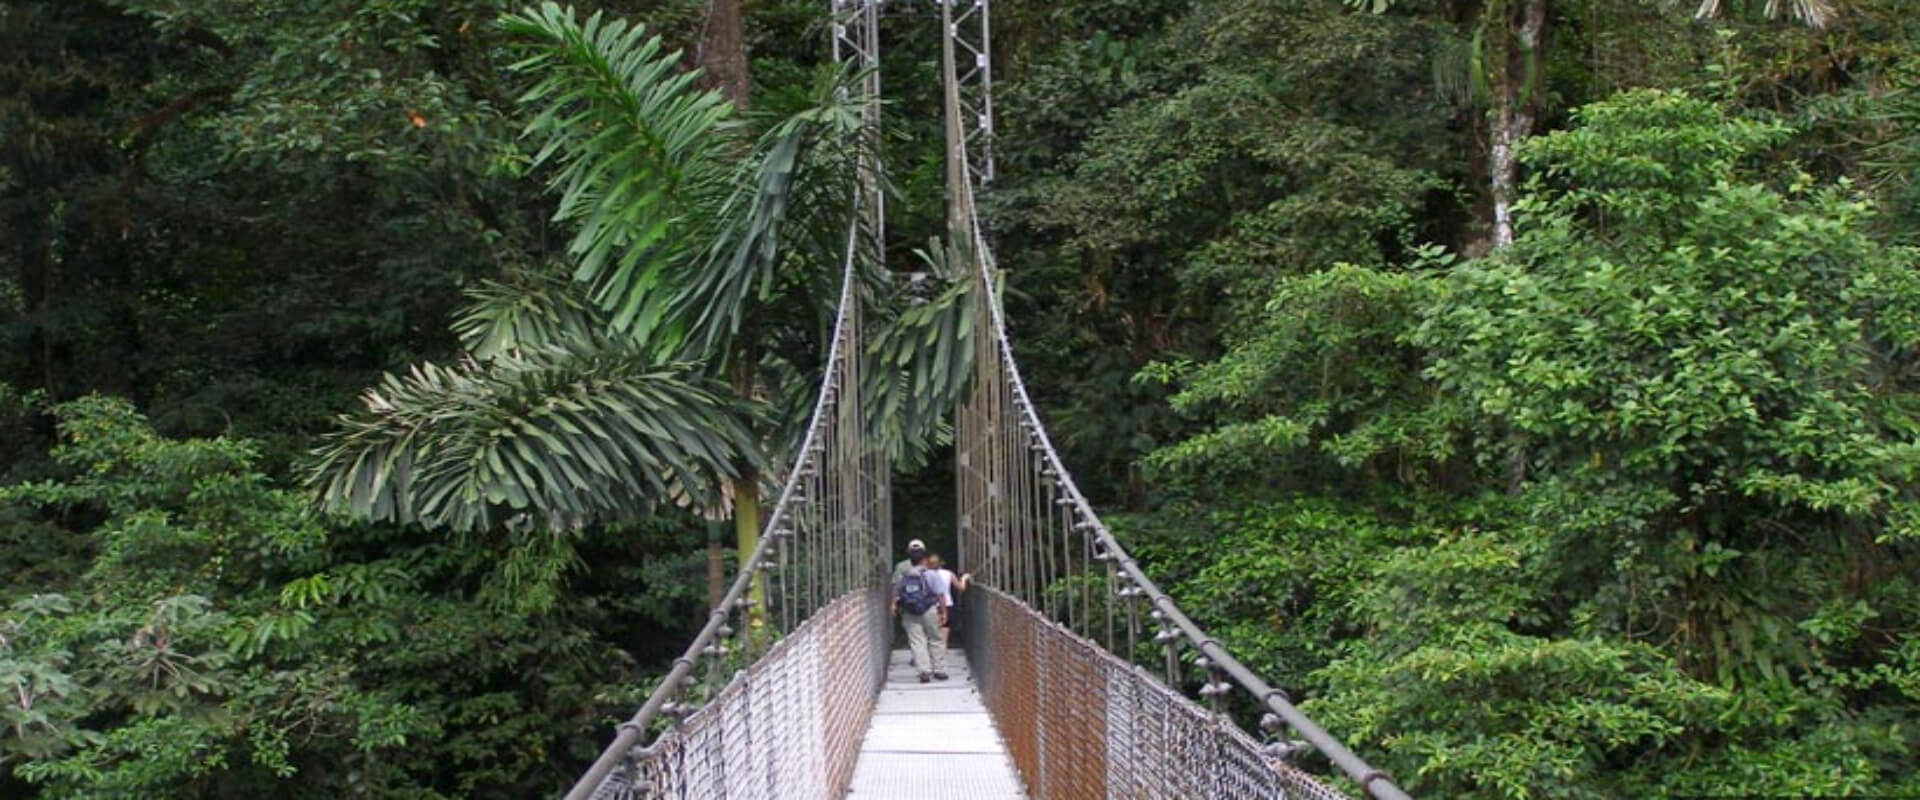 Arenal Hanging Bridges Walking Tour | Costa Rica Jade Tours